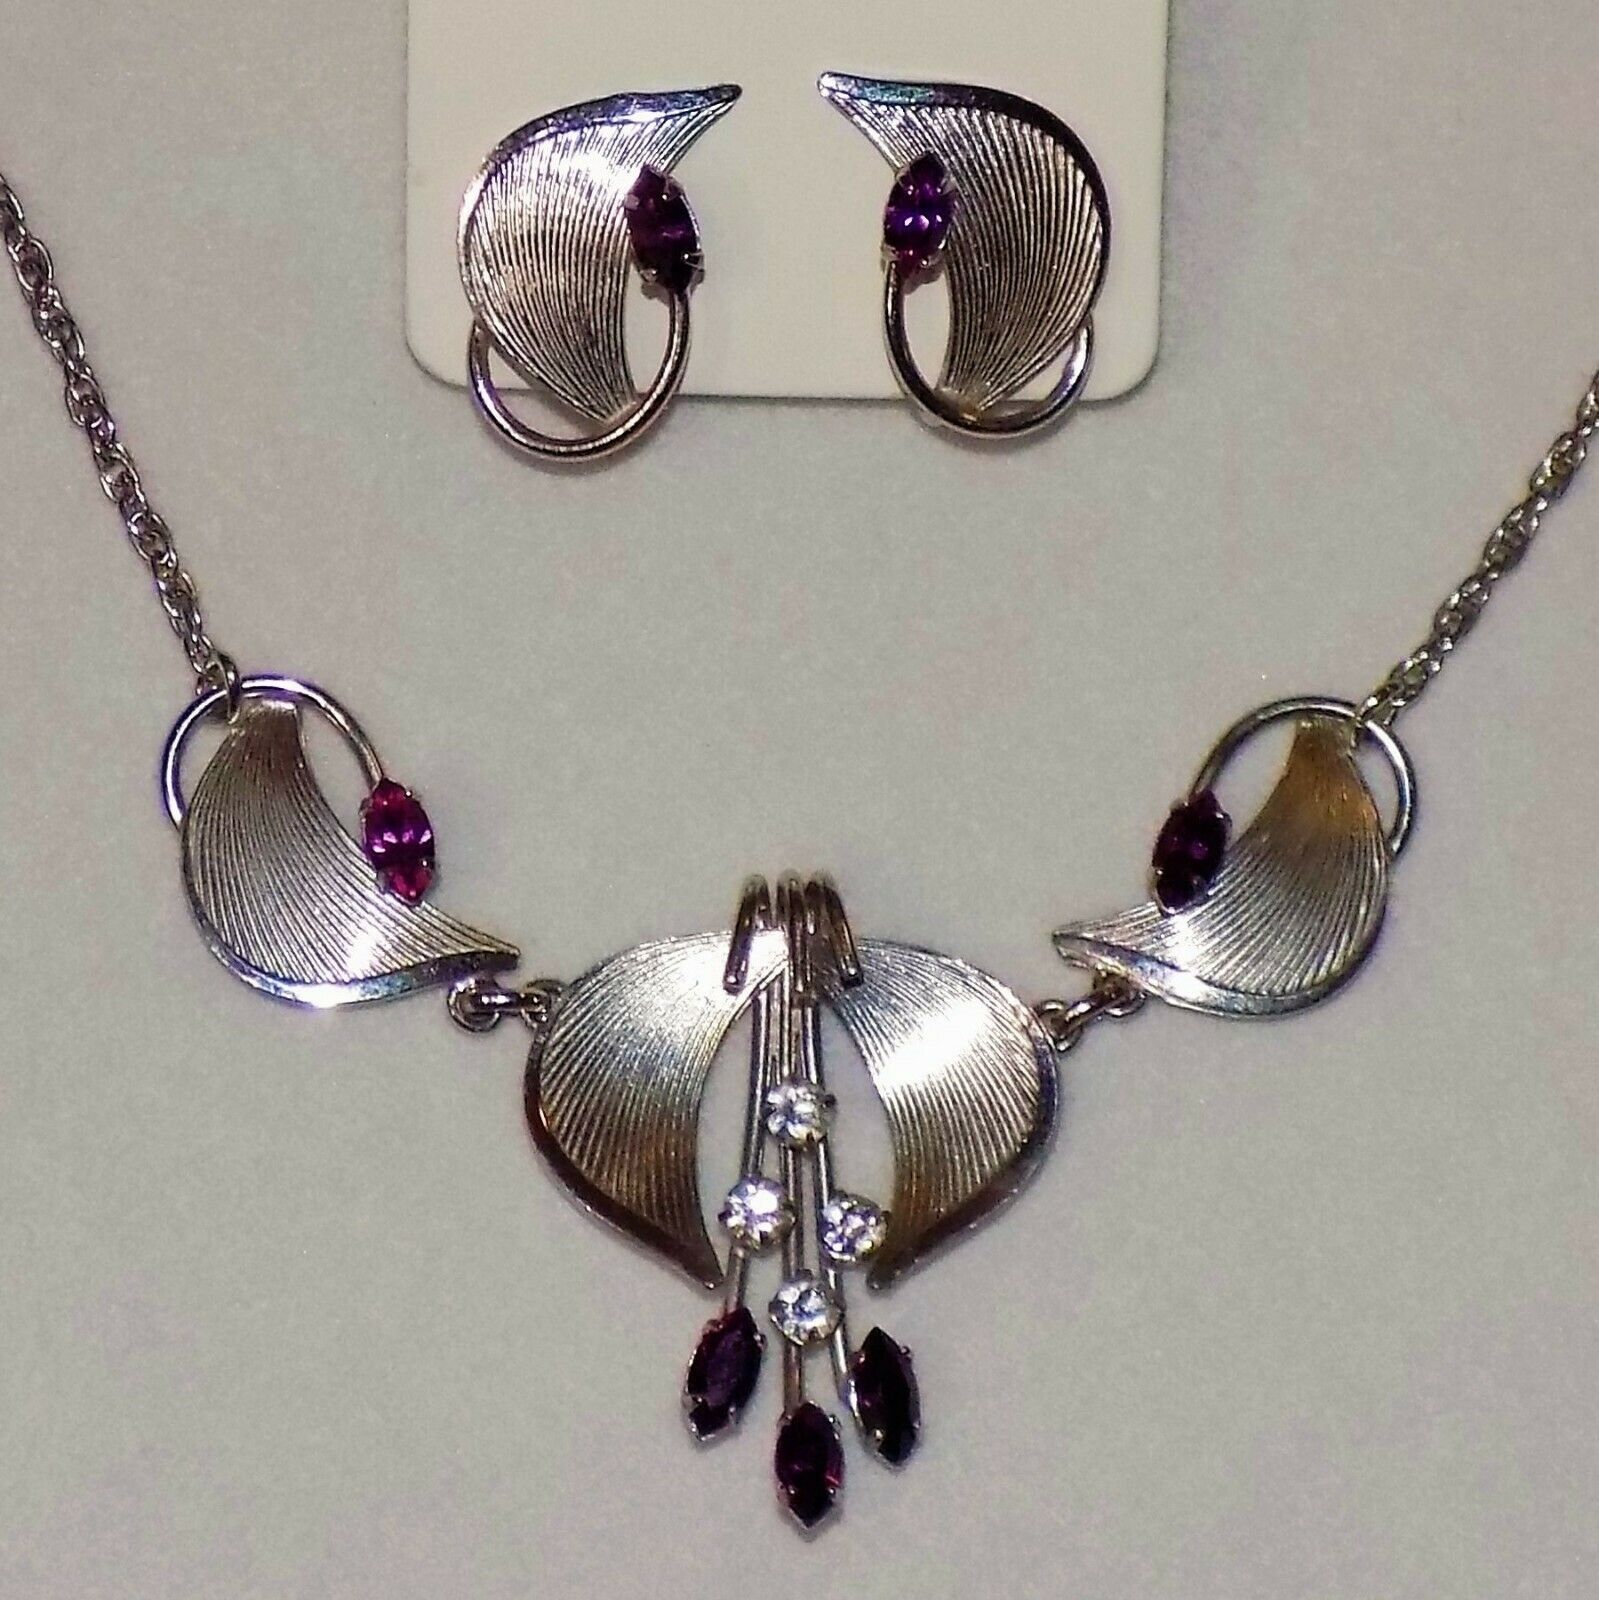 1940's Carl Art Sterling Silver Gemstone Screw-back Earring Necklace Jewelry Set